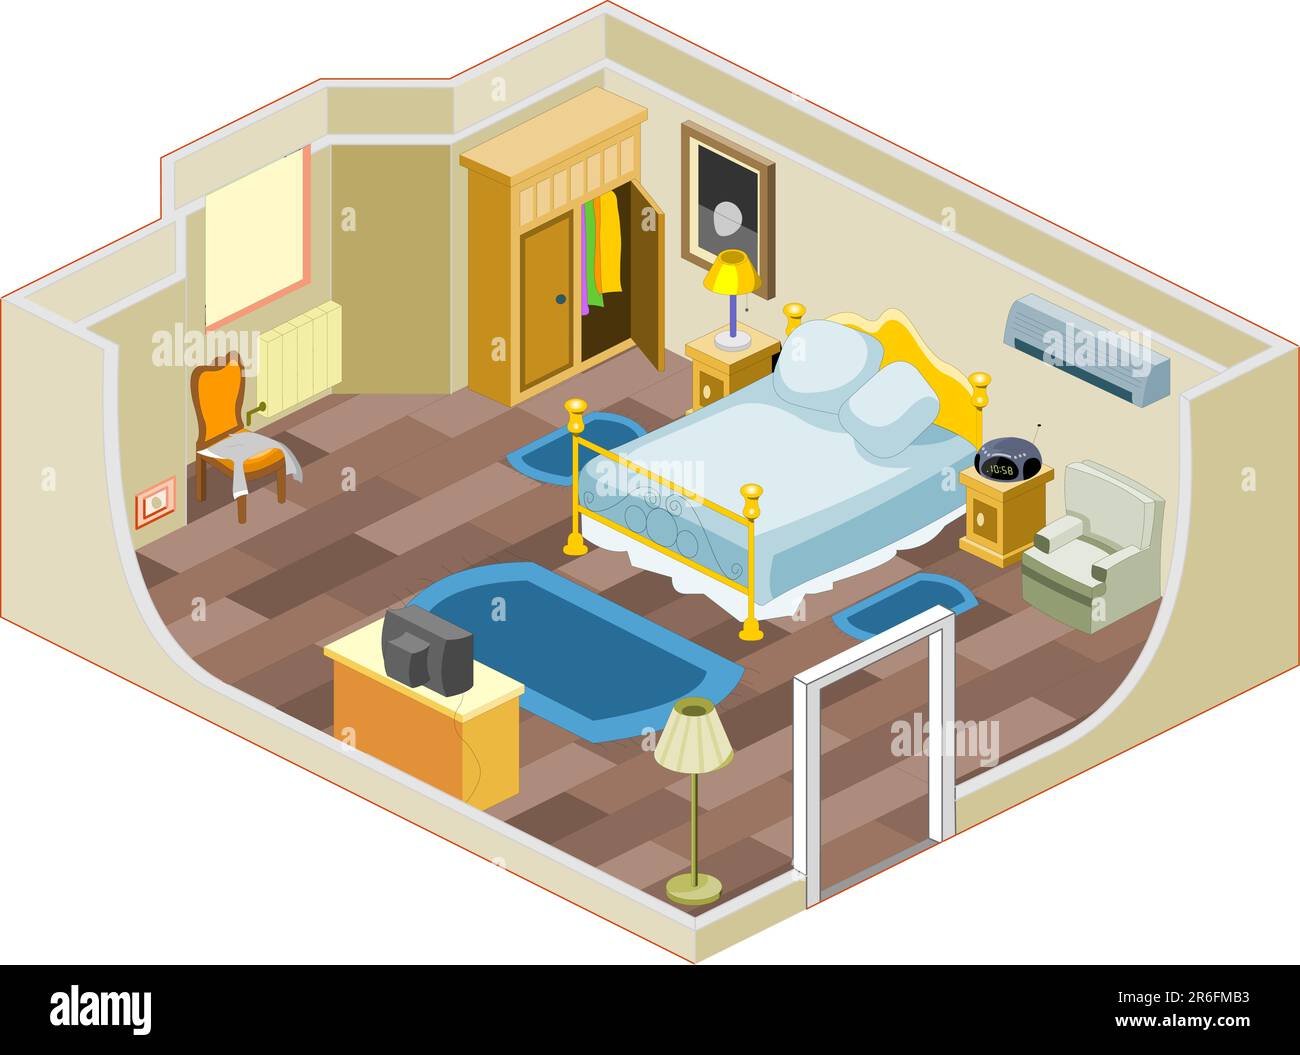 Möbel und Gegenstände, die in der Regel in einem Schlafzimmer verwendet werden Stock Vektor